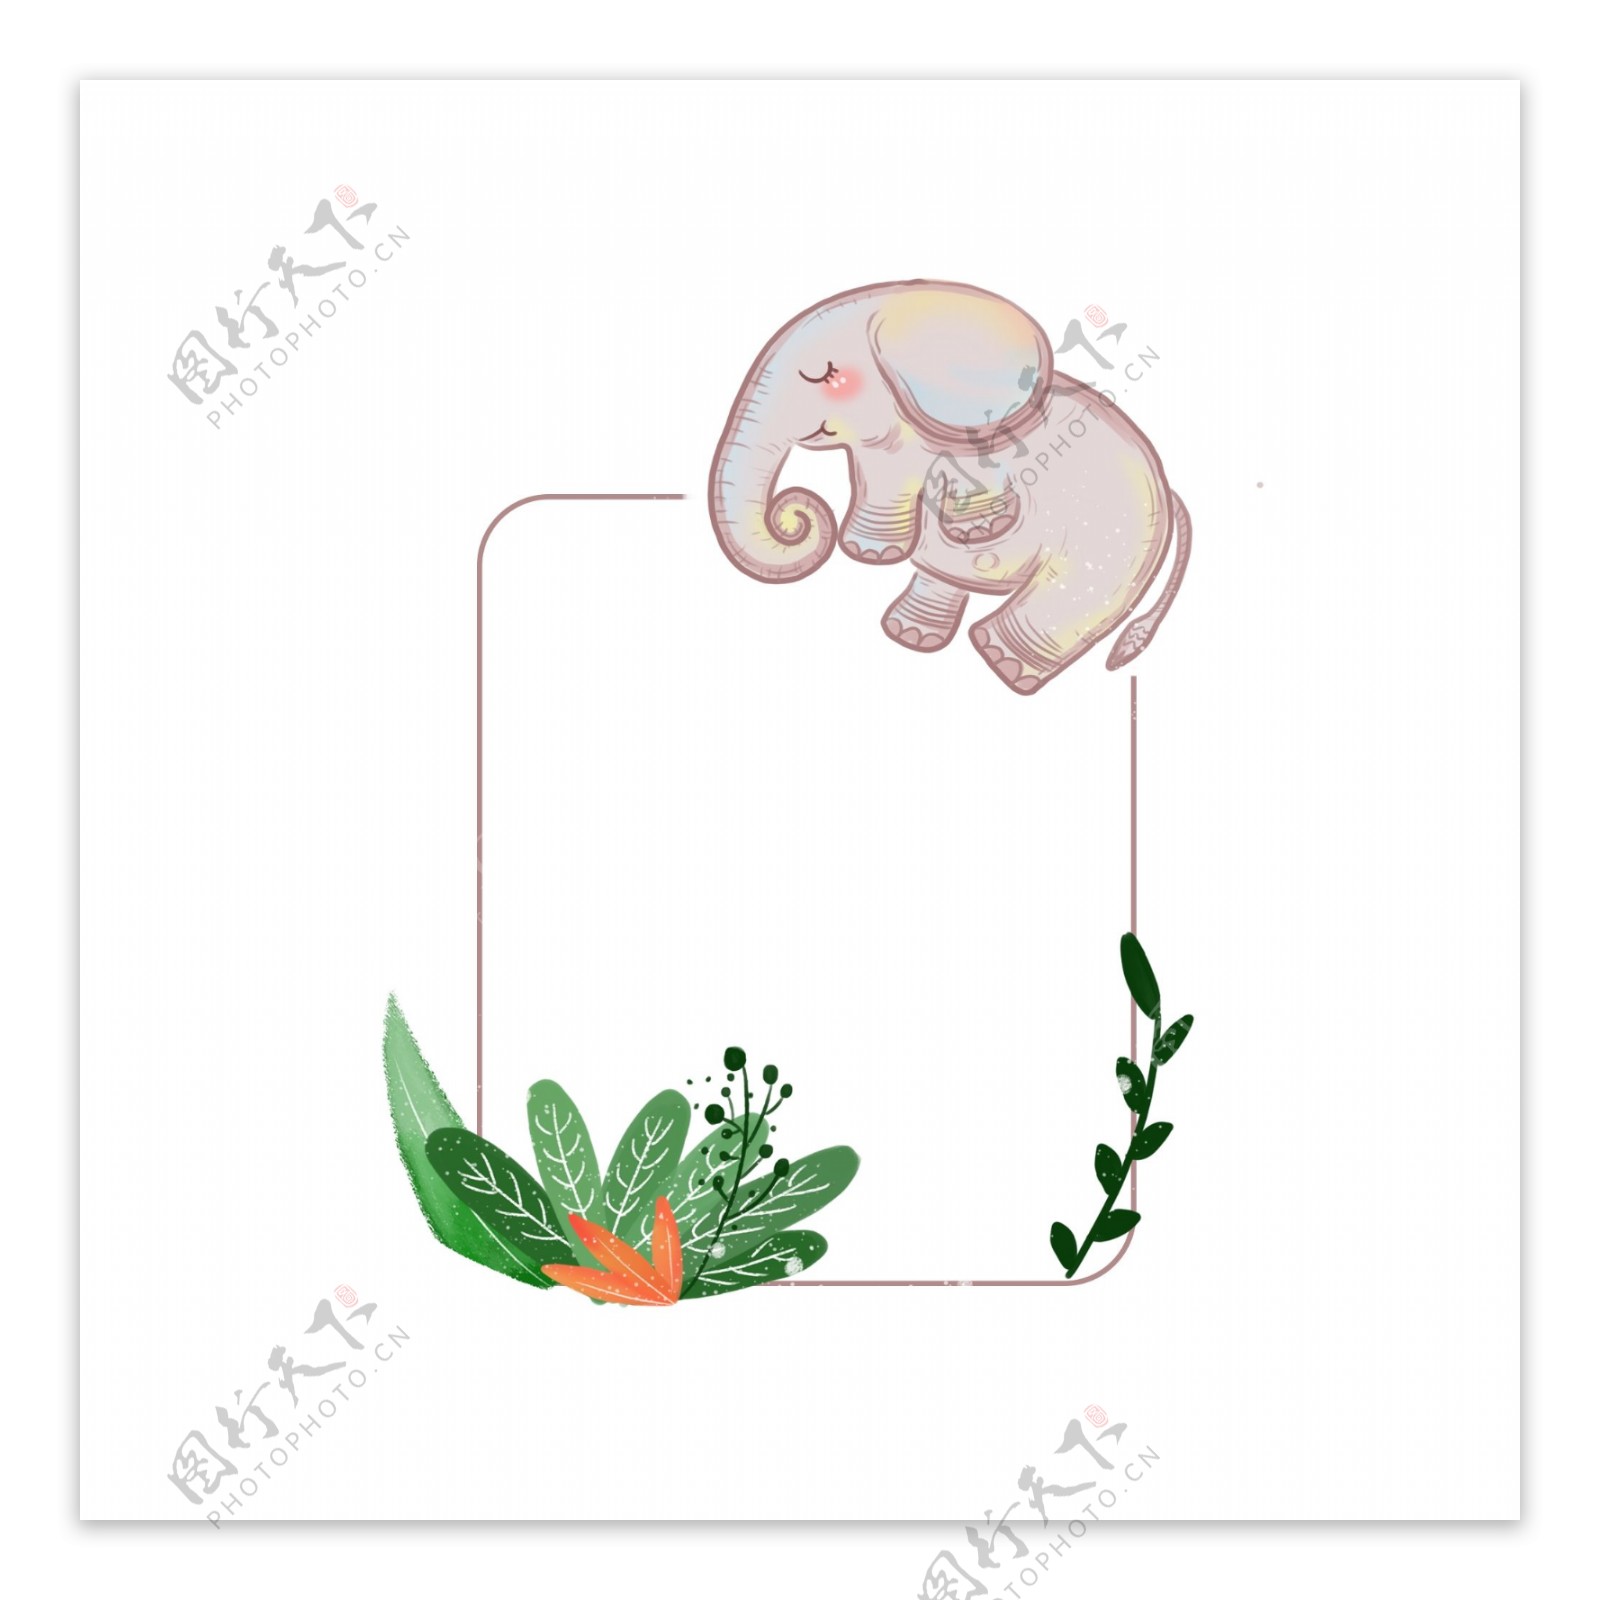 手绘卡通可爱动物边框植物大象睡觉热带元素